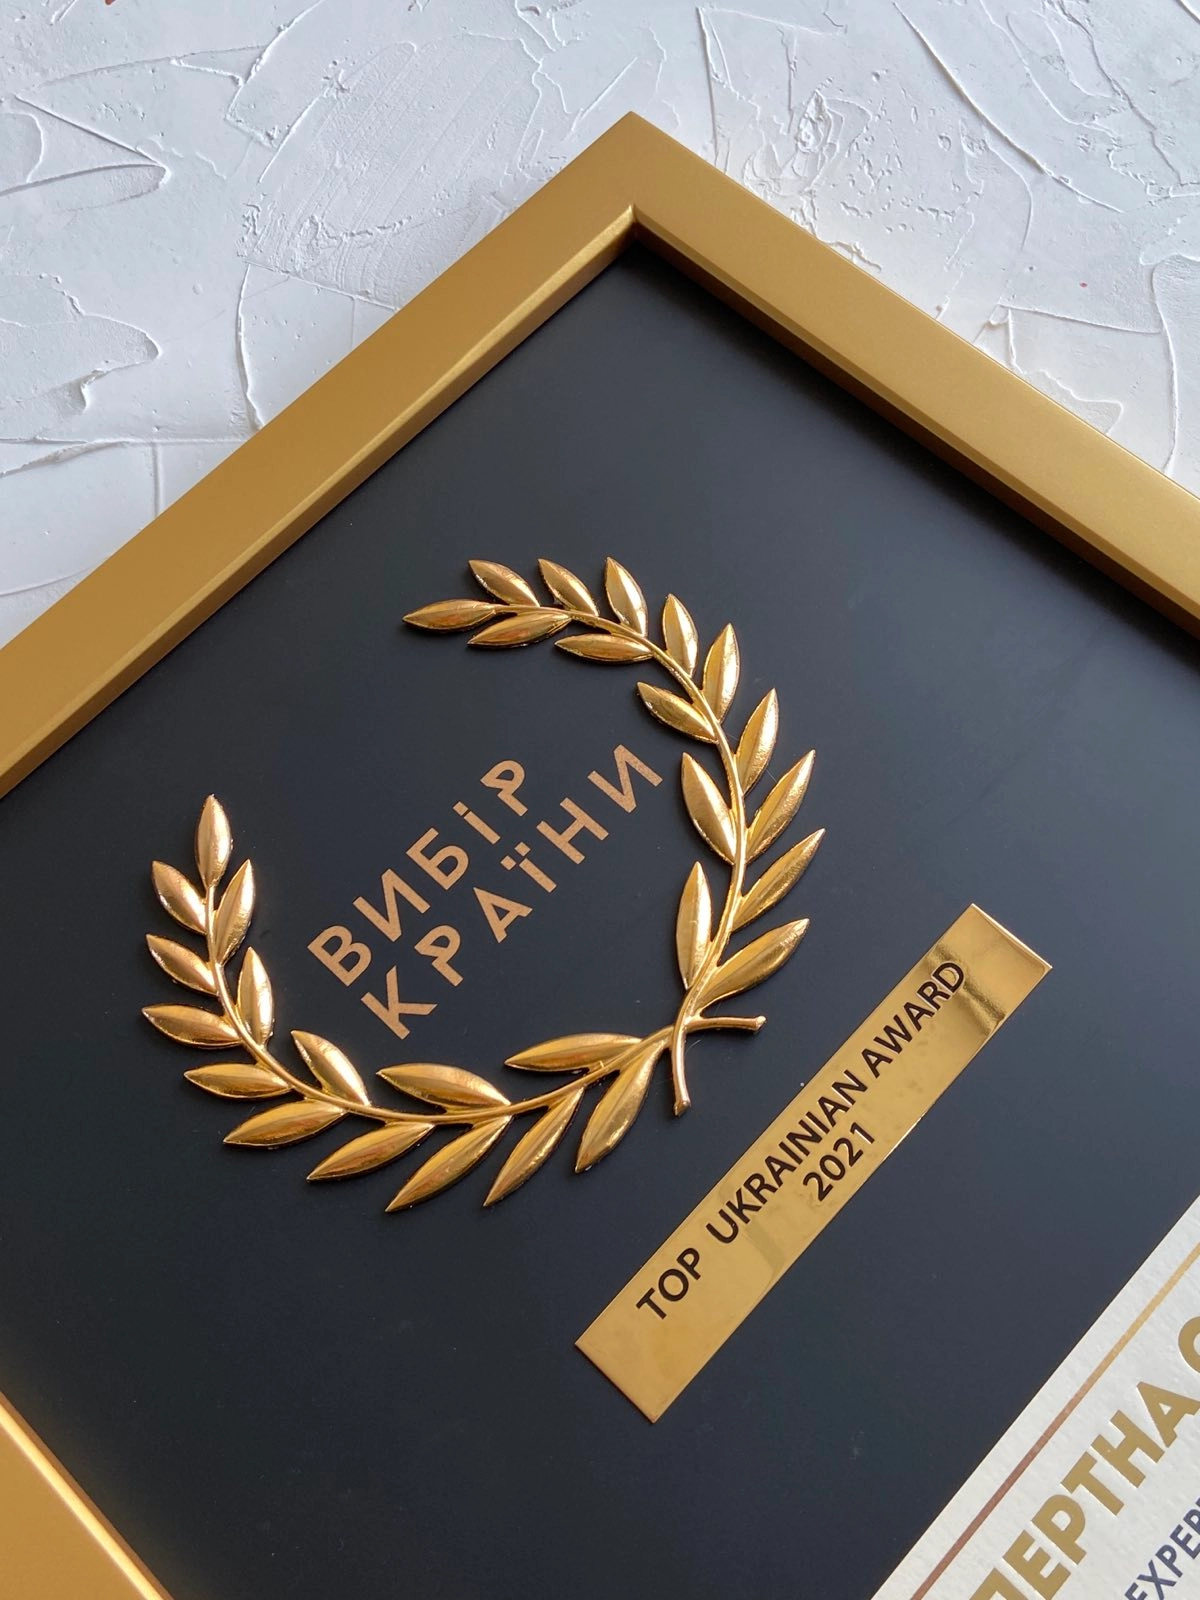  ТОВ "Корвет", мережа магазинів "Офіс Центр" виборола престижну нагороду — "Вибір Країни "